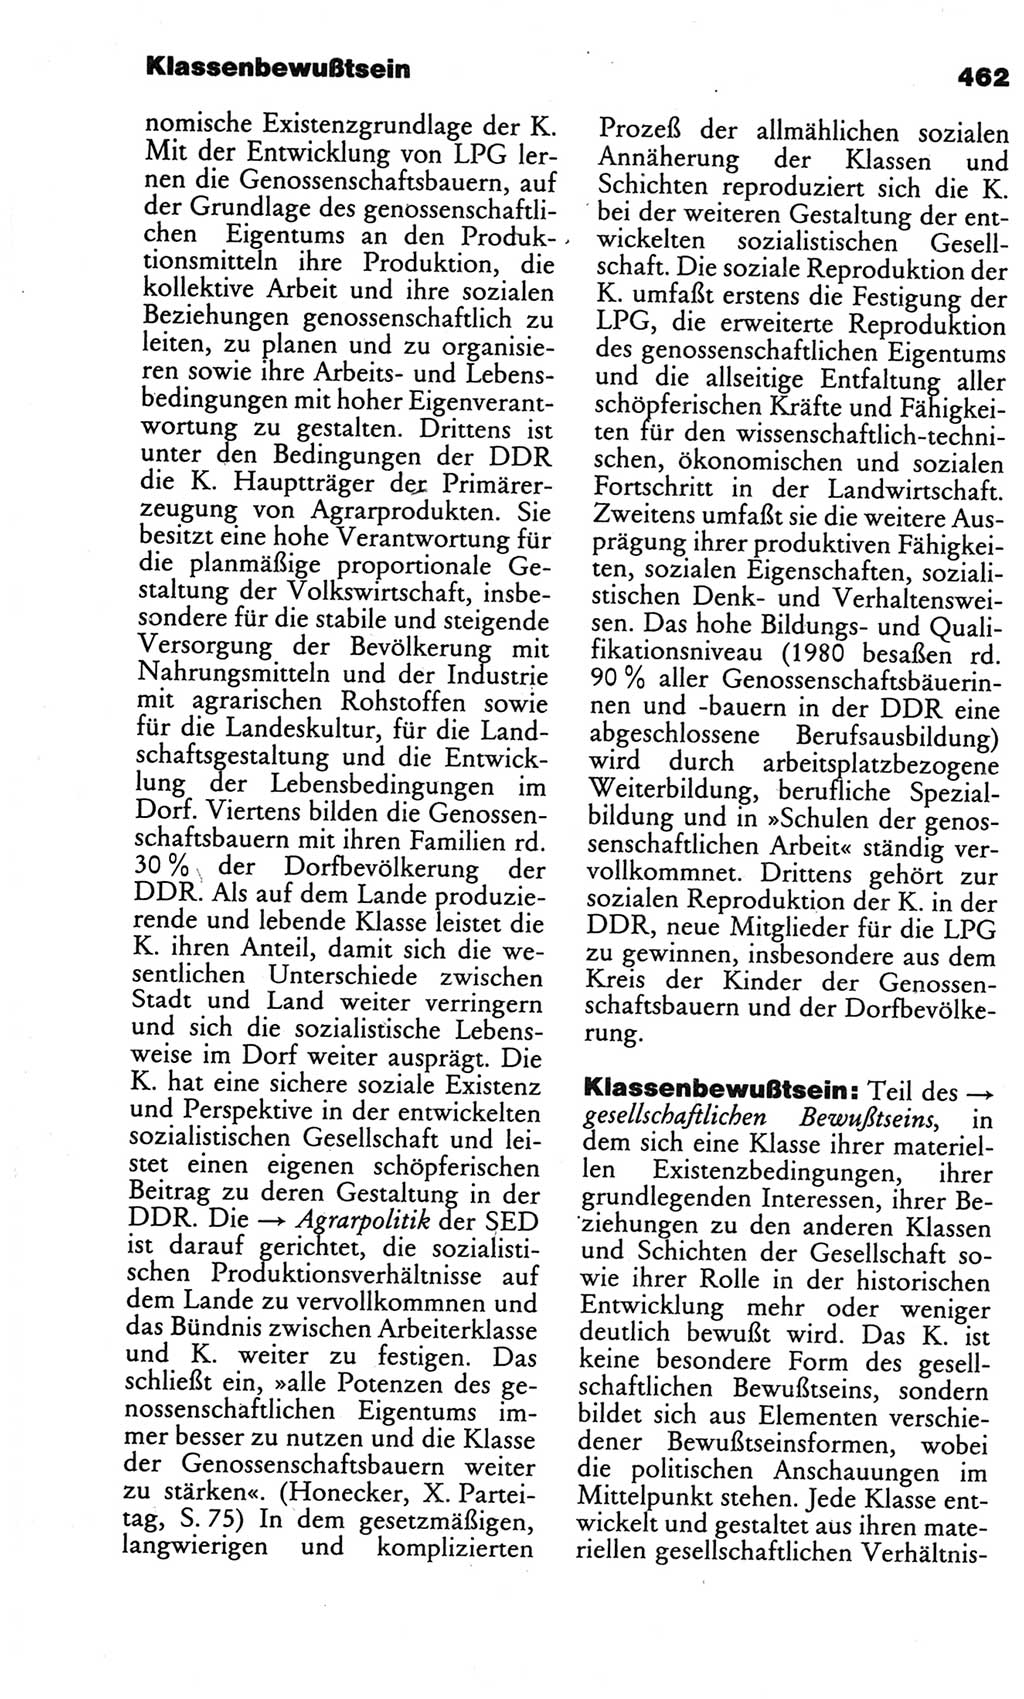 Kleines politisches Wörterbuch [Deutsche Demokratische Republik (DDR)] 1986, Seite 462 (Kl. pol. Wb. DDR 1986, S. 462)